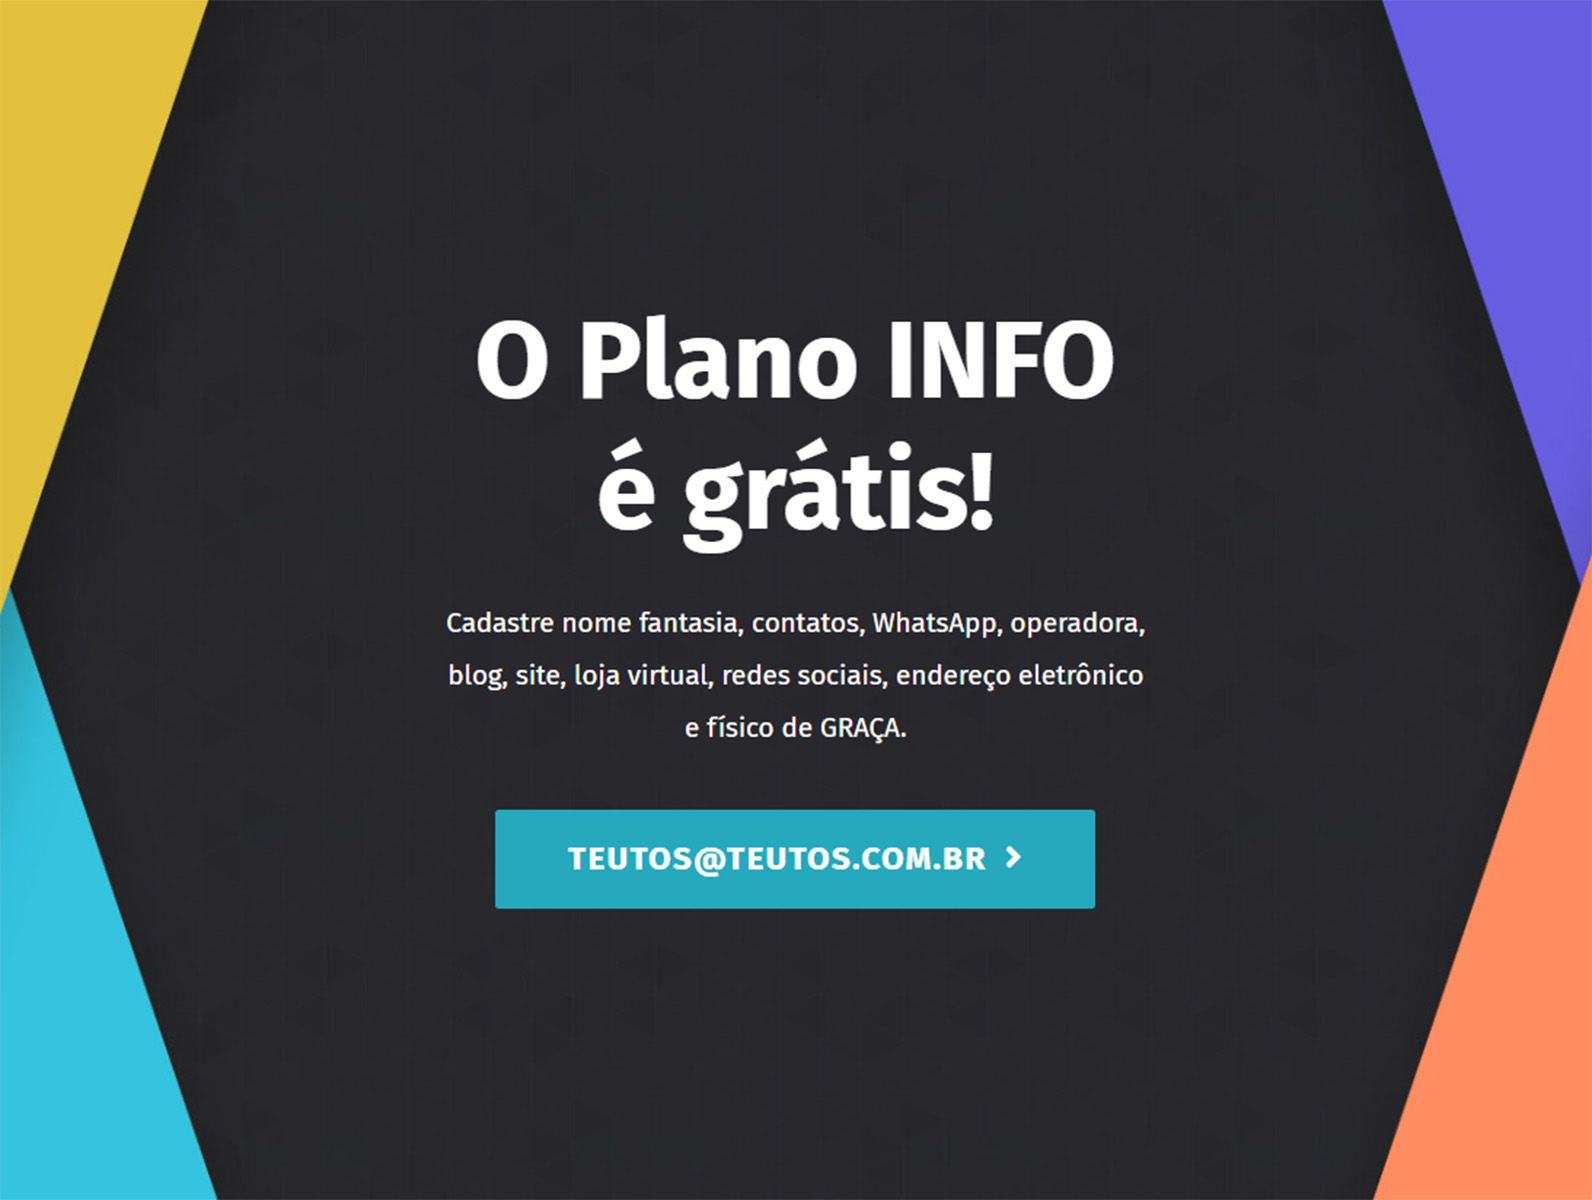 (c) Teutos.com.br